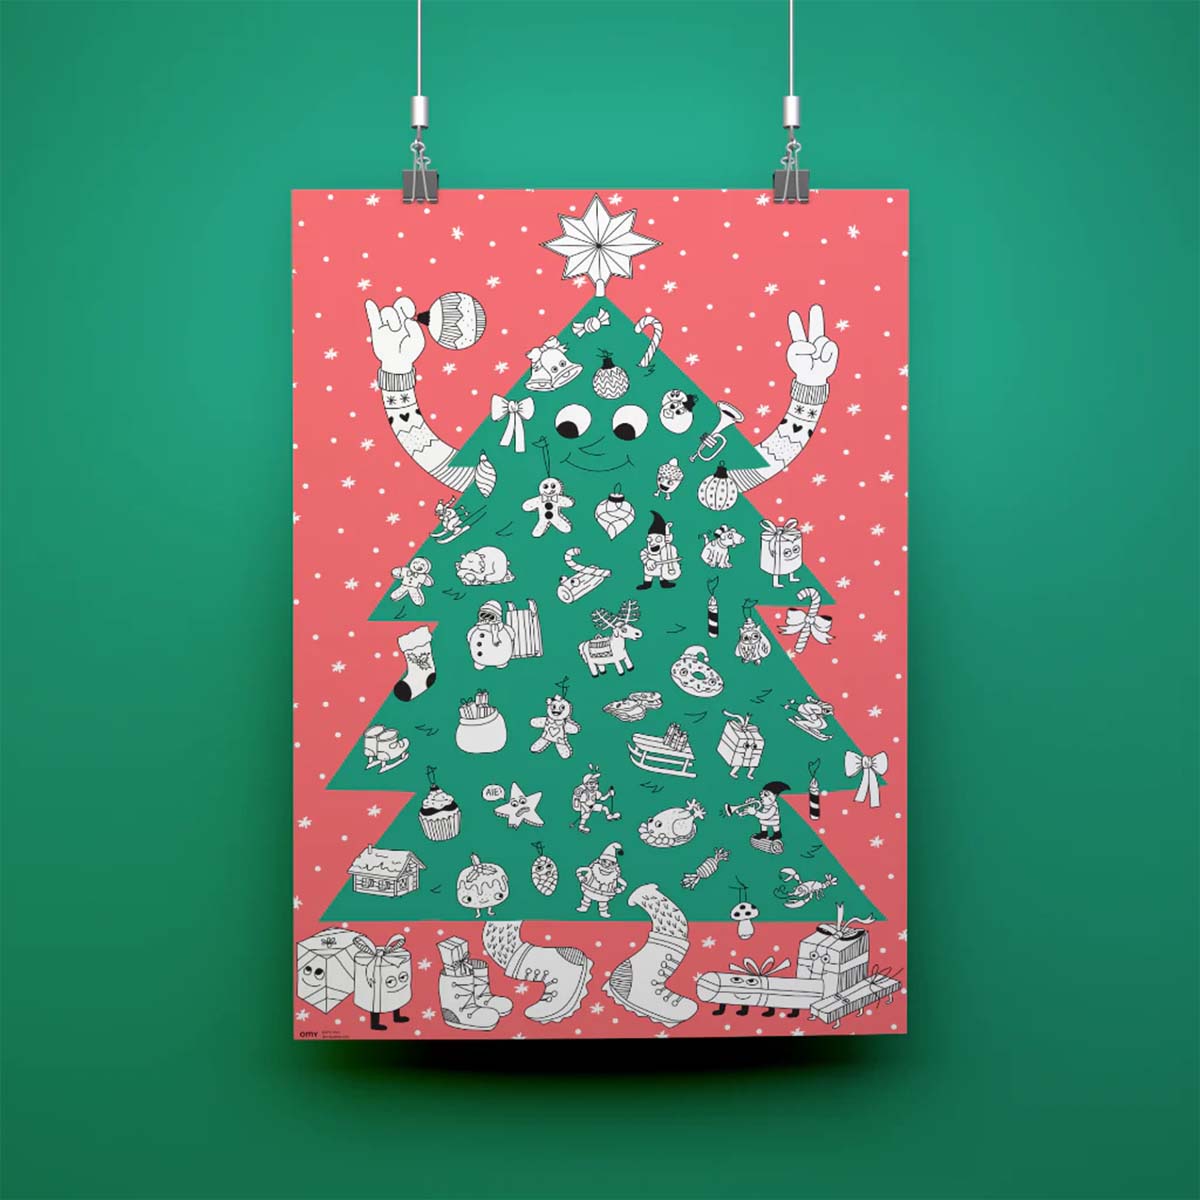 De OMY kleurposter 1 mtr kerst zorgt voor heel veel uren kleurplezier. Deze grote themakleurplaat sapin van 70 x 100 cm neemt je mee in een betoverende kerstwereld. Pak je favoriete viltstiften erbij en ga op avontuur! VanZus